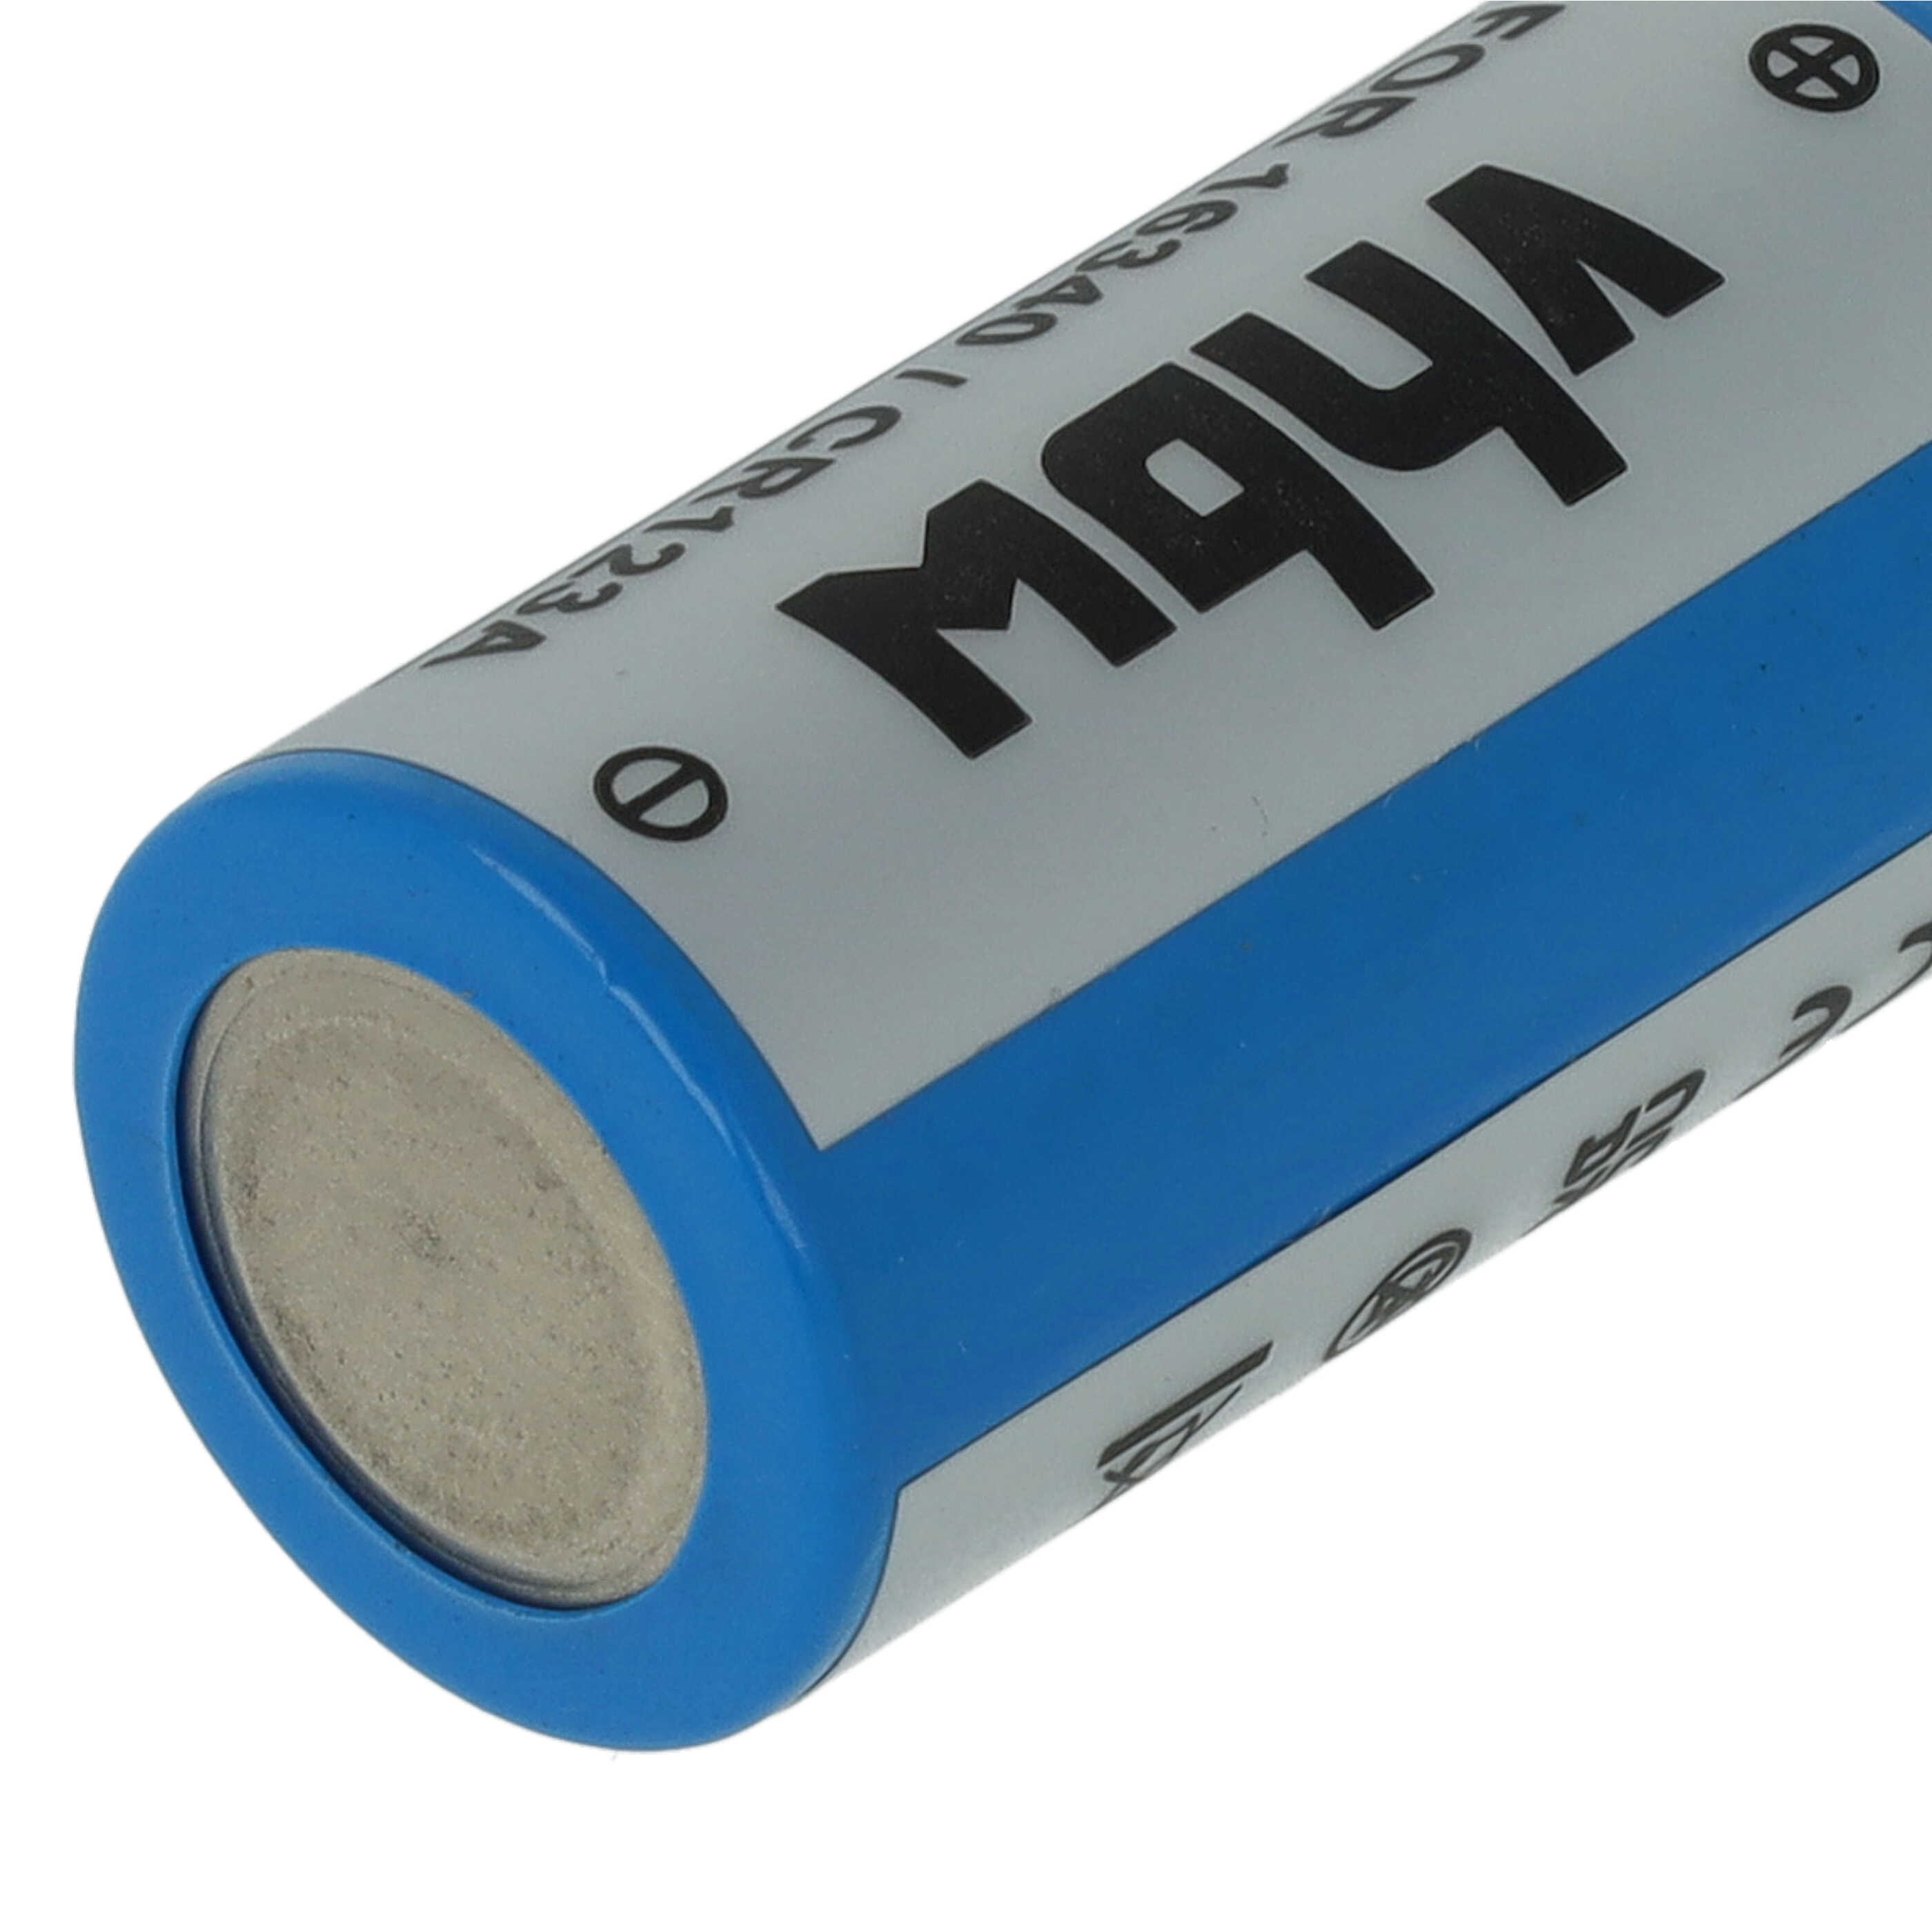 Batteries (3x pièces) remplace 16340, CR123R, CR17335, CR17345, CR123A - 700mAh 3,6V Li-ion, 1x cellules